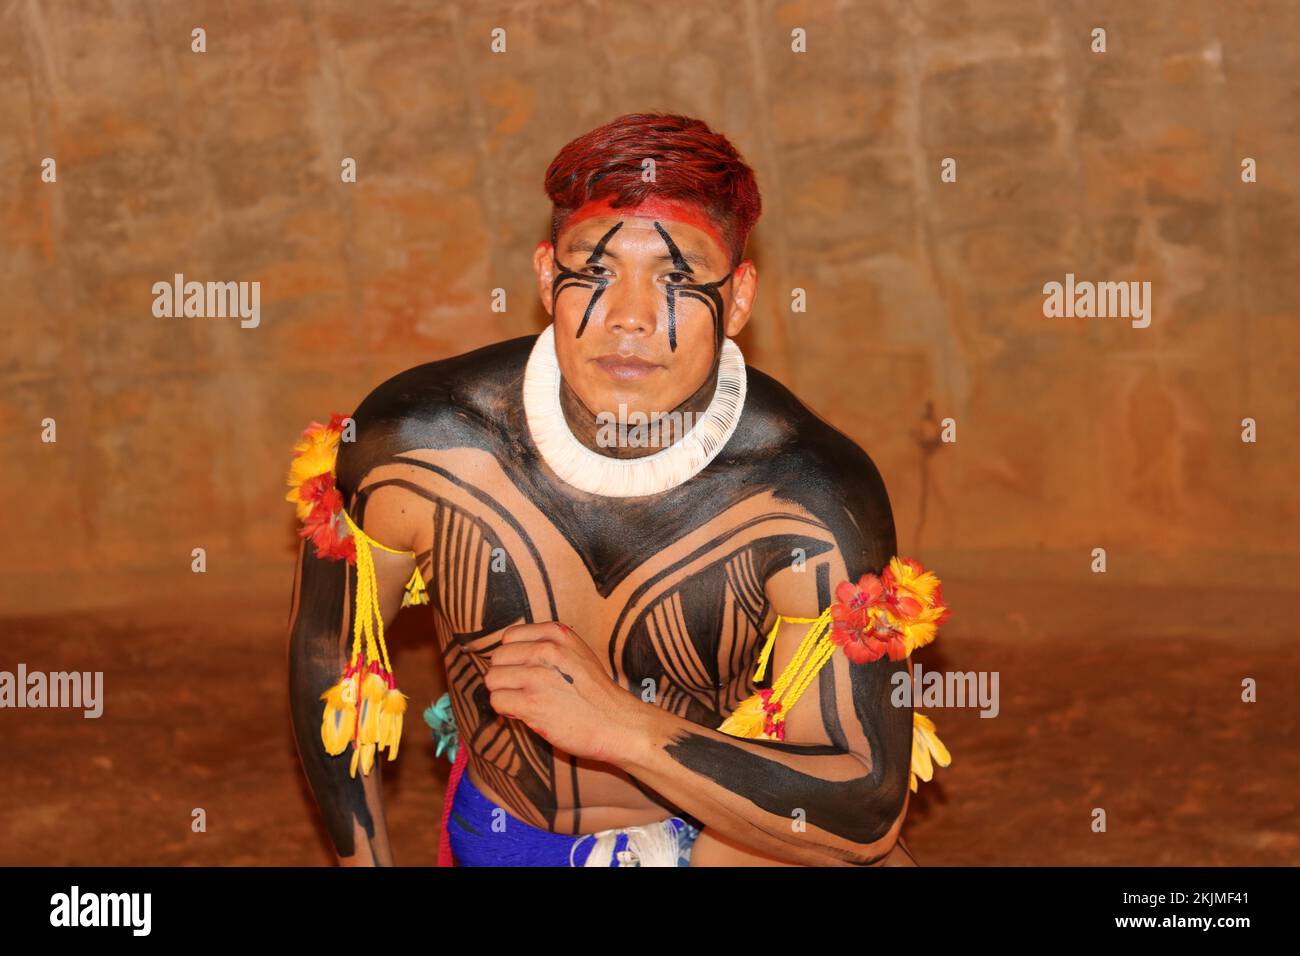 Les indigènes, Mehinako (Xingu) homme est décoré et porte la peinture traditionnelle du corps, Mato Grosso, Brésil, Amérique du Sud Banque D'Images